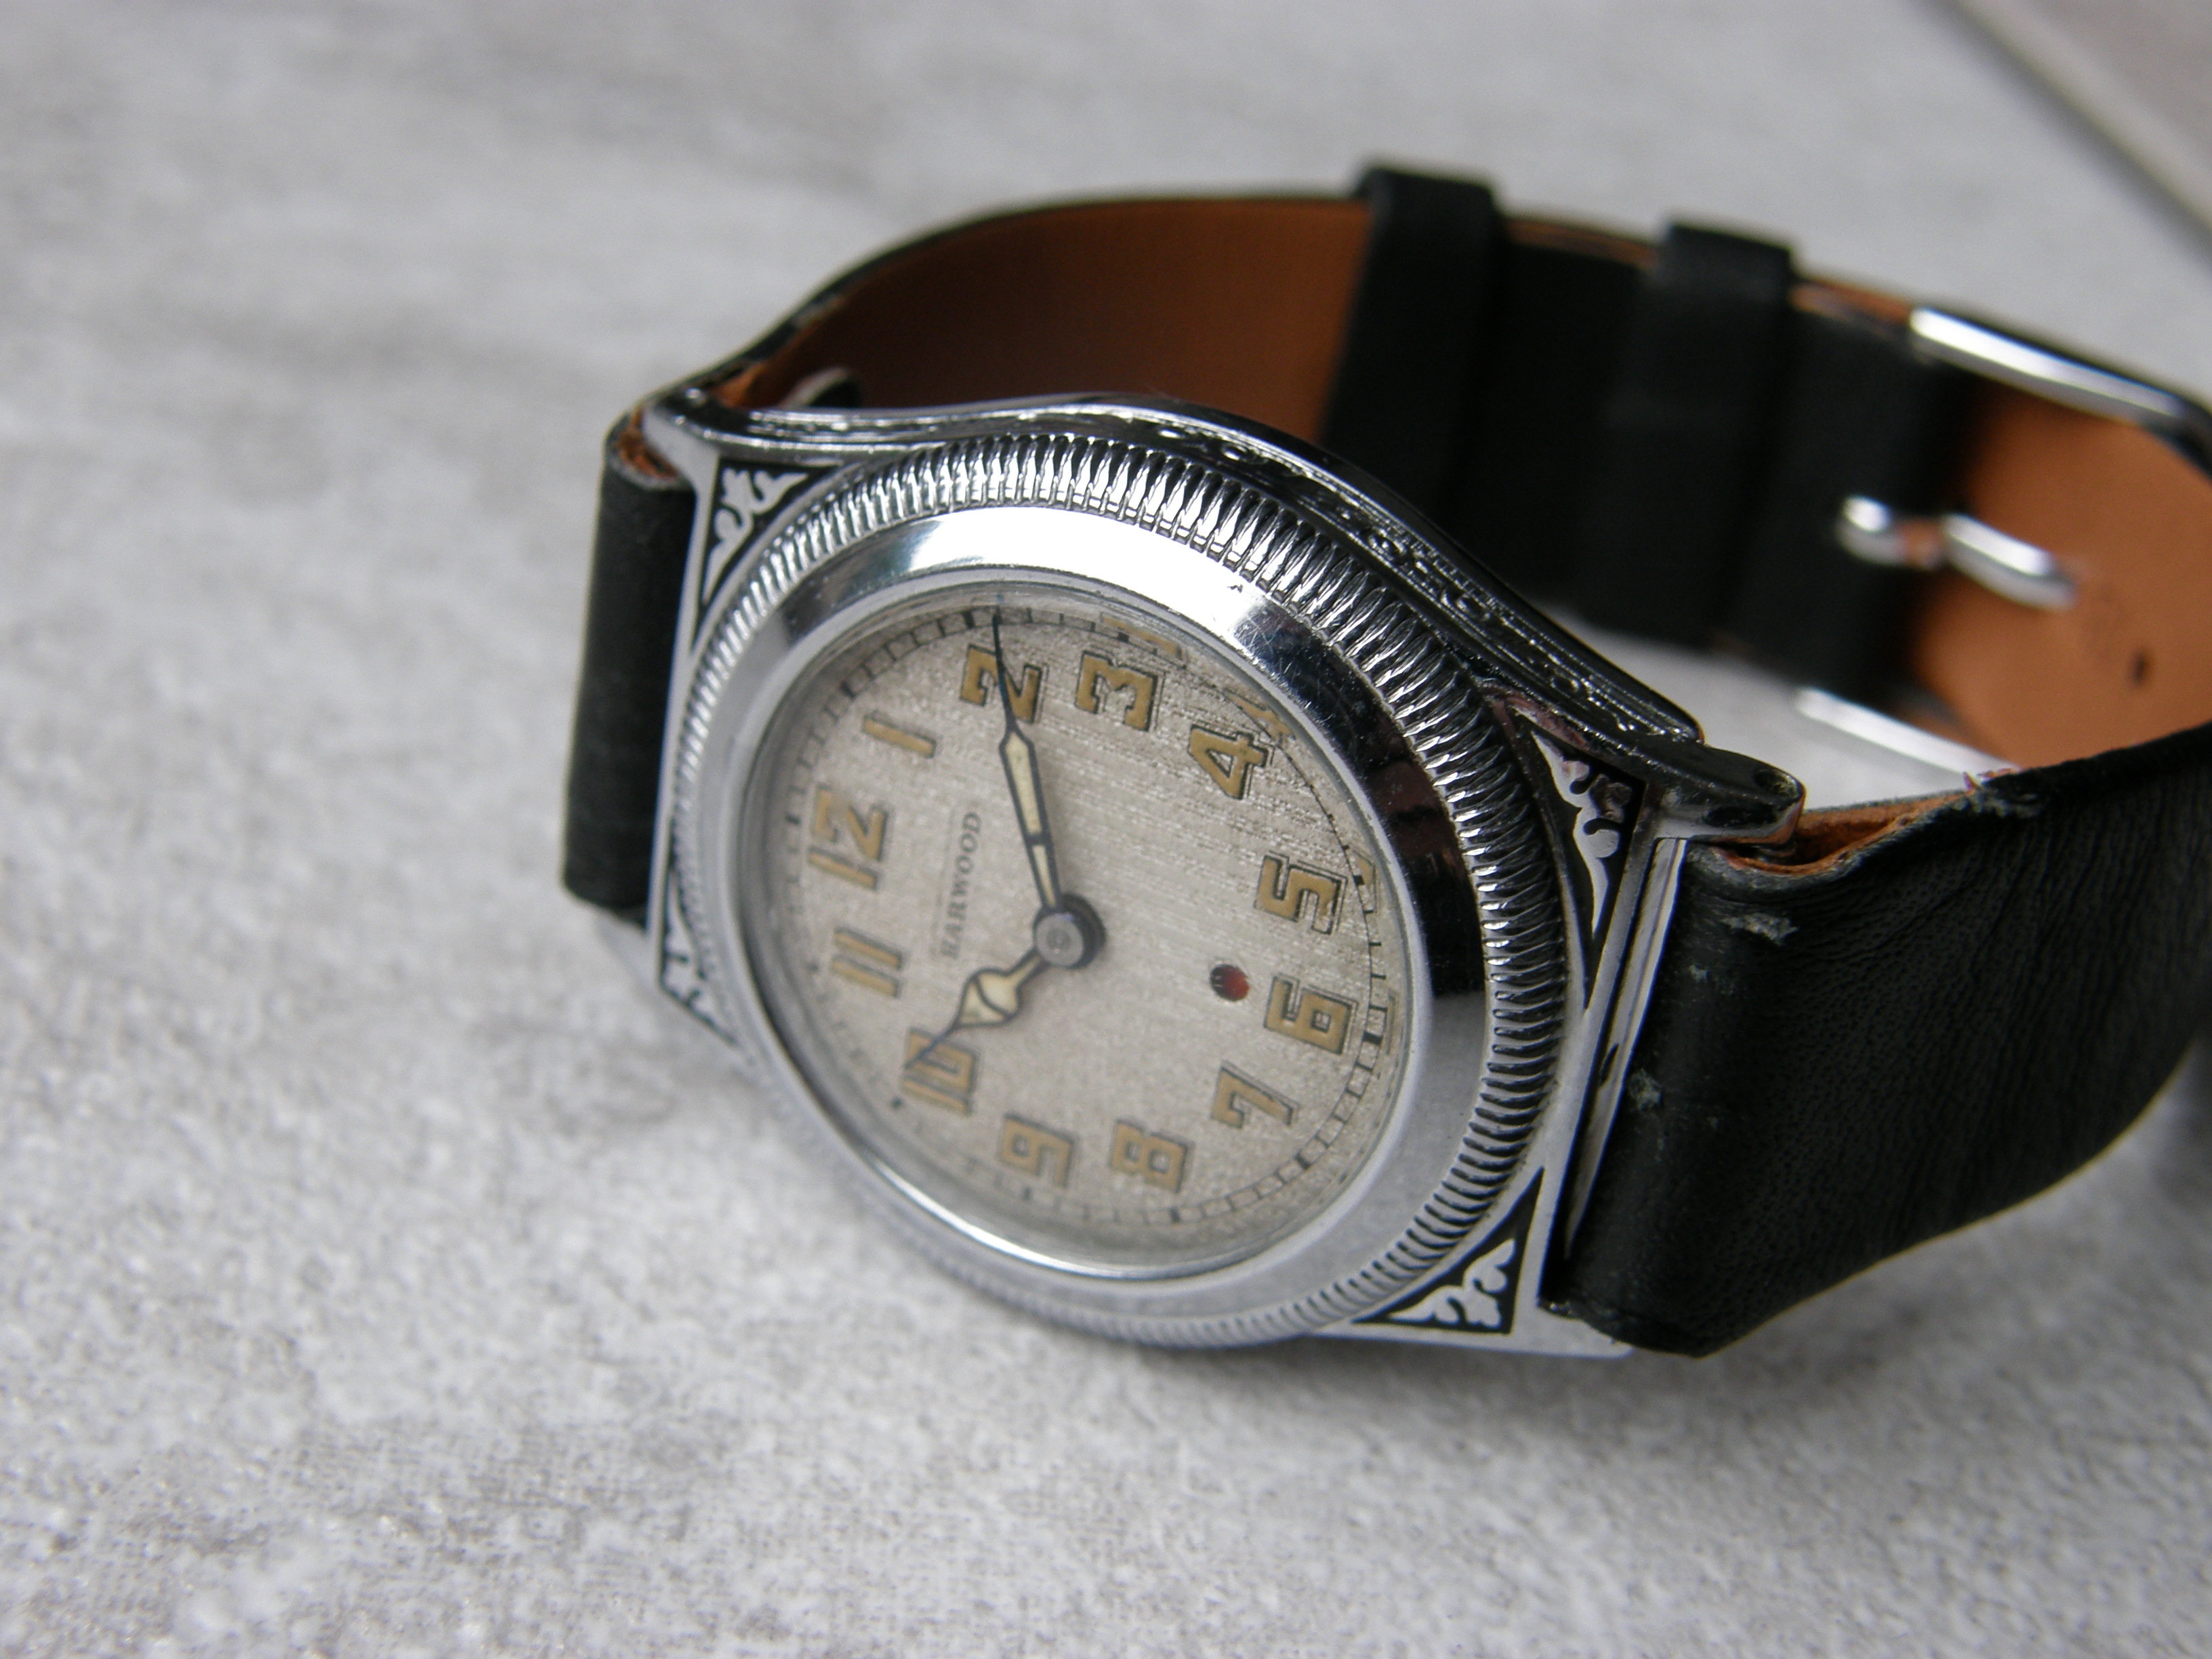 niet meer koop - Horlogemarkt (archief) - Horlogeforum.nl het forum voor liefhebbers van horloges